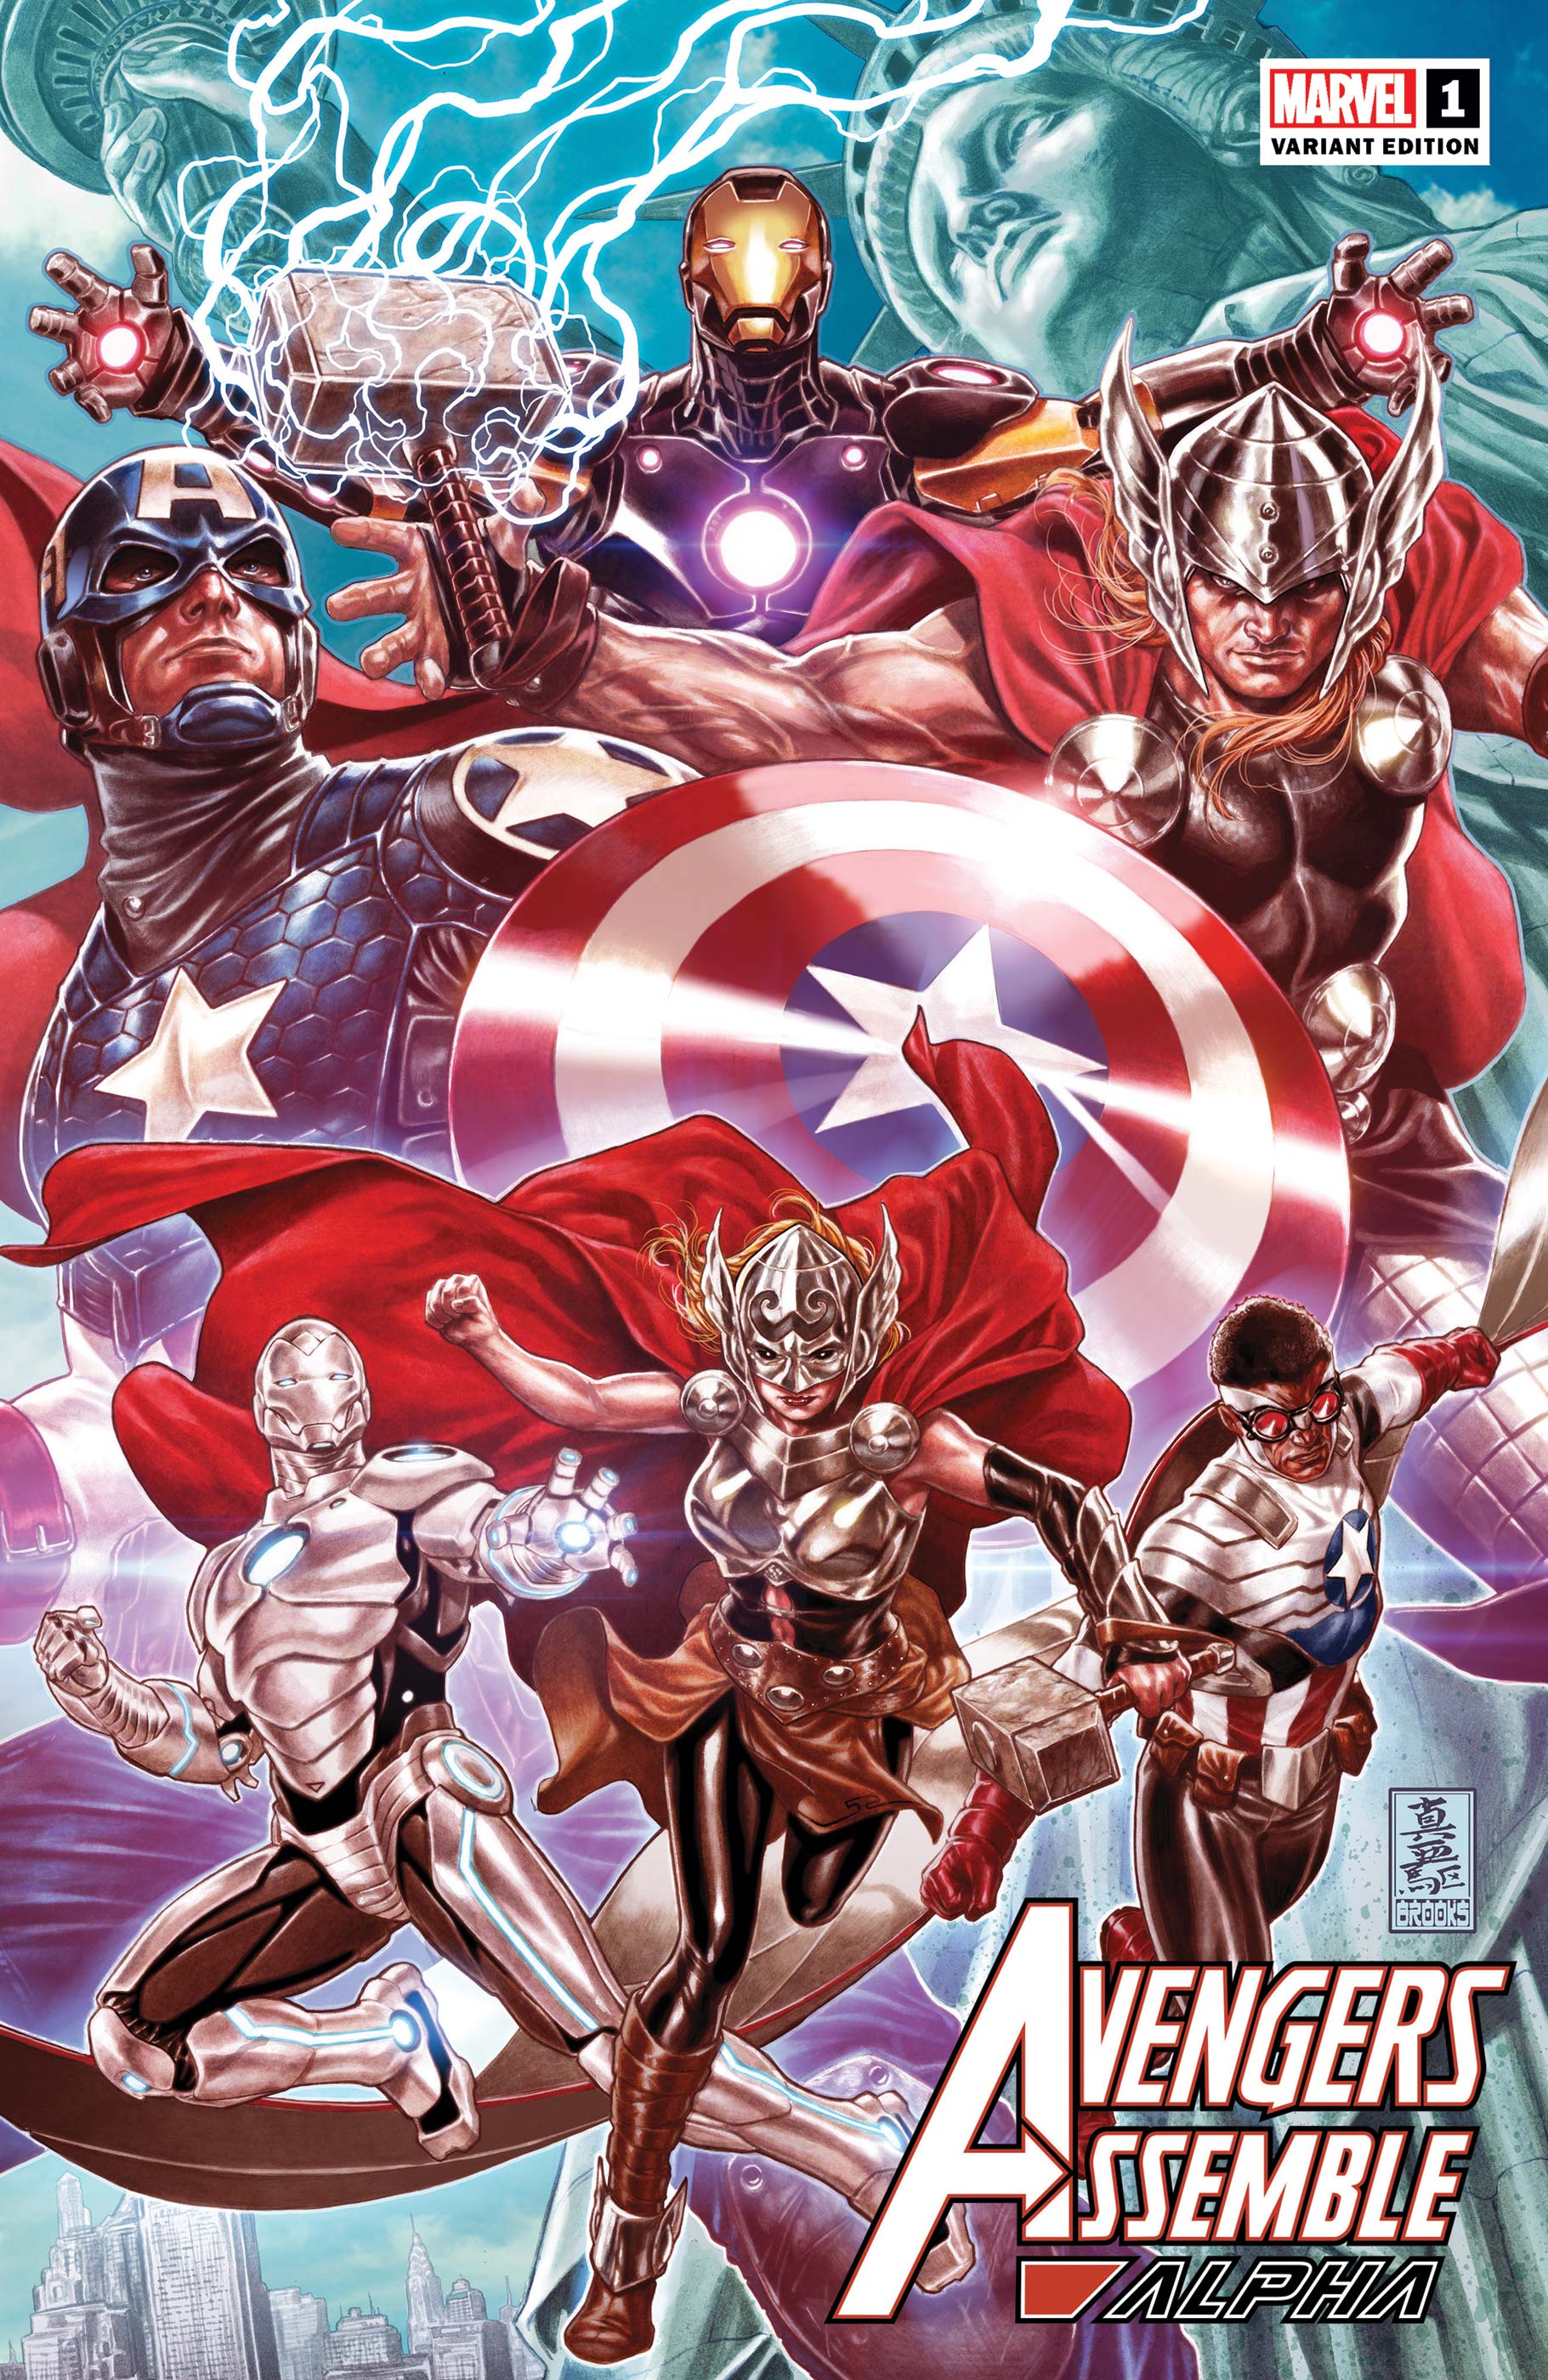 BBC One - Marvel's Avengers Assemble